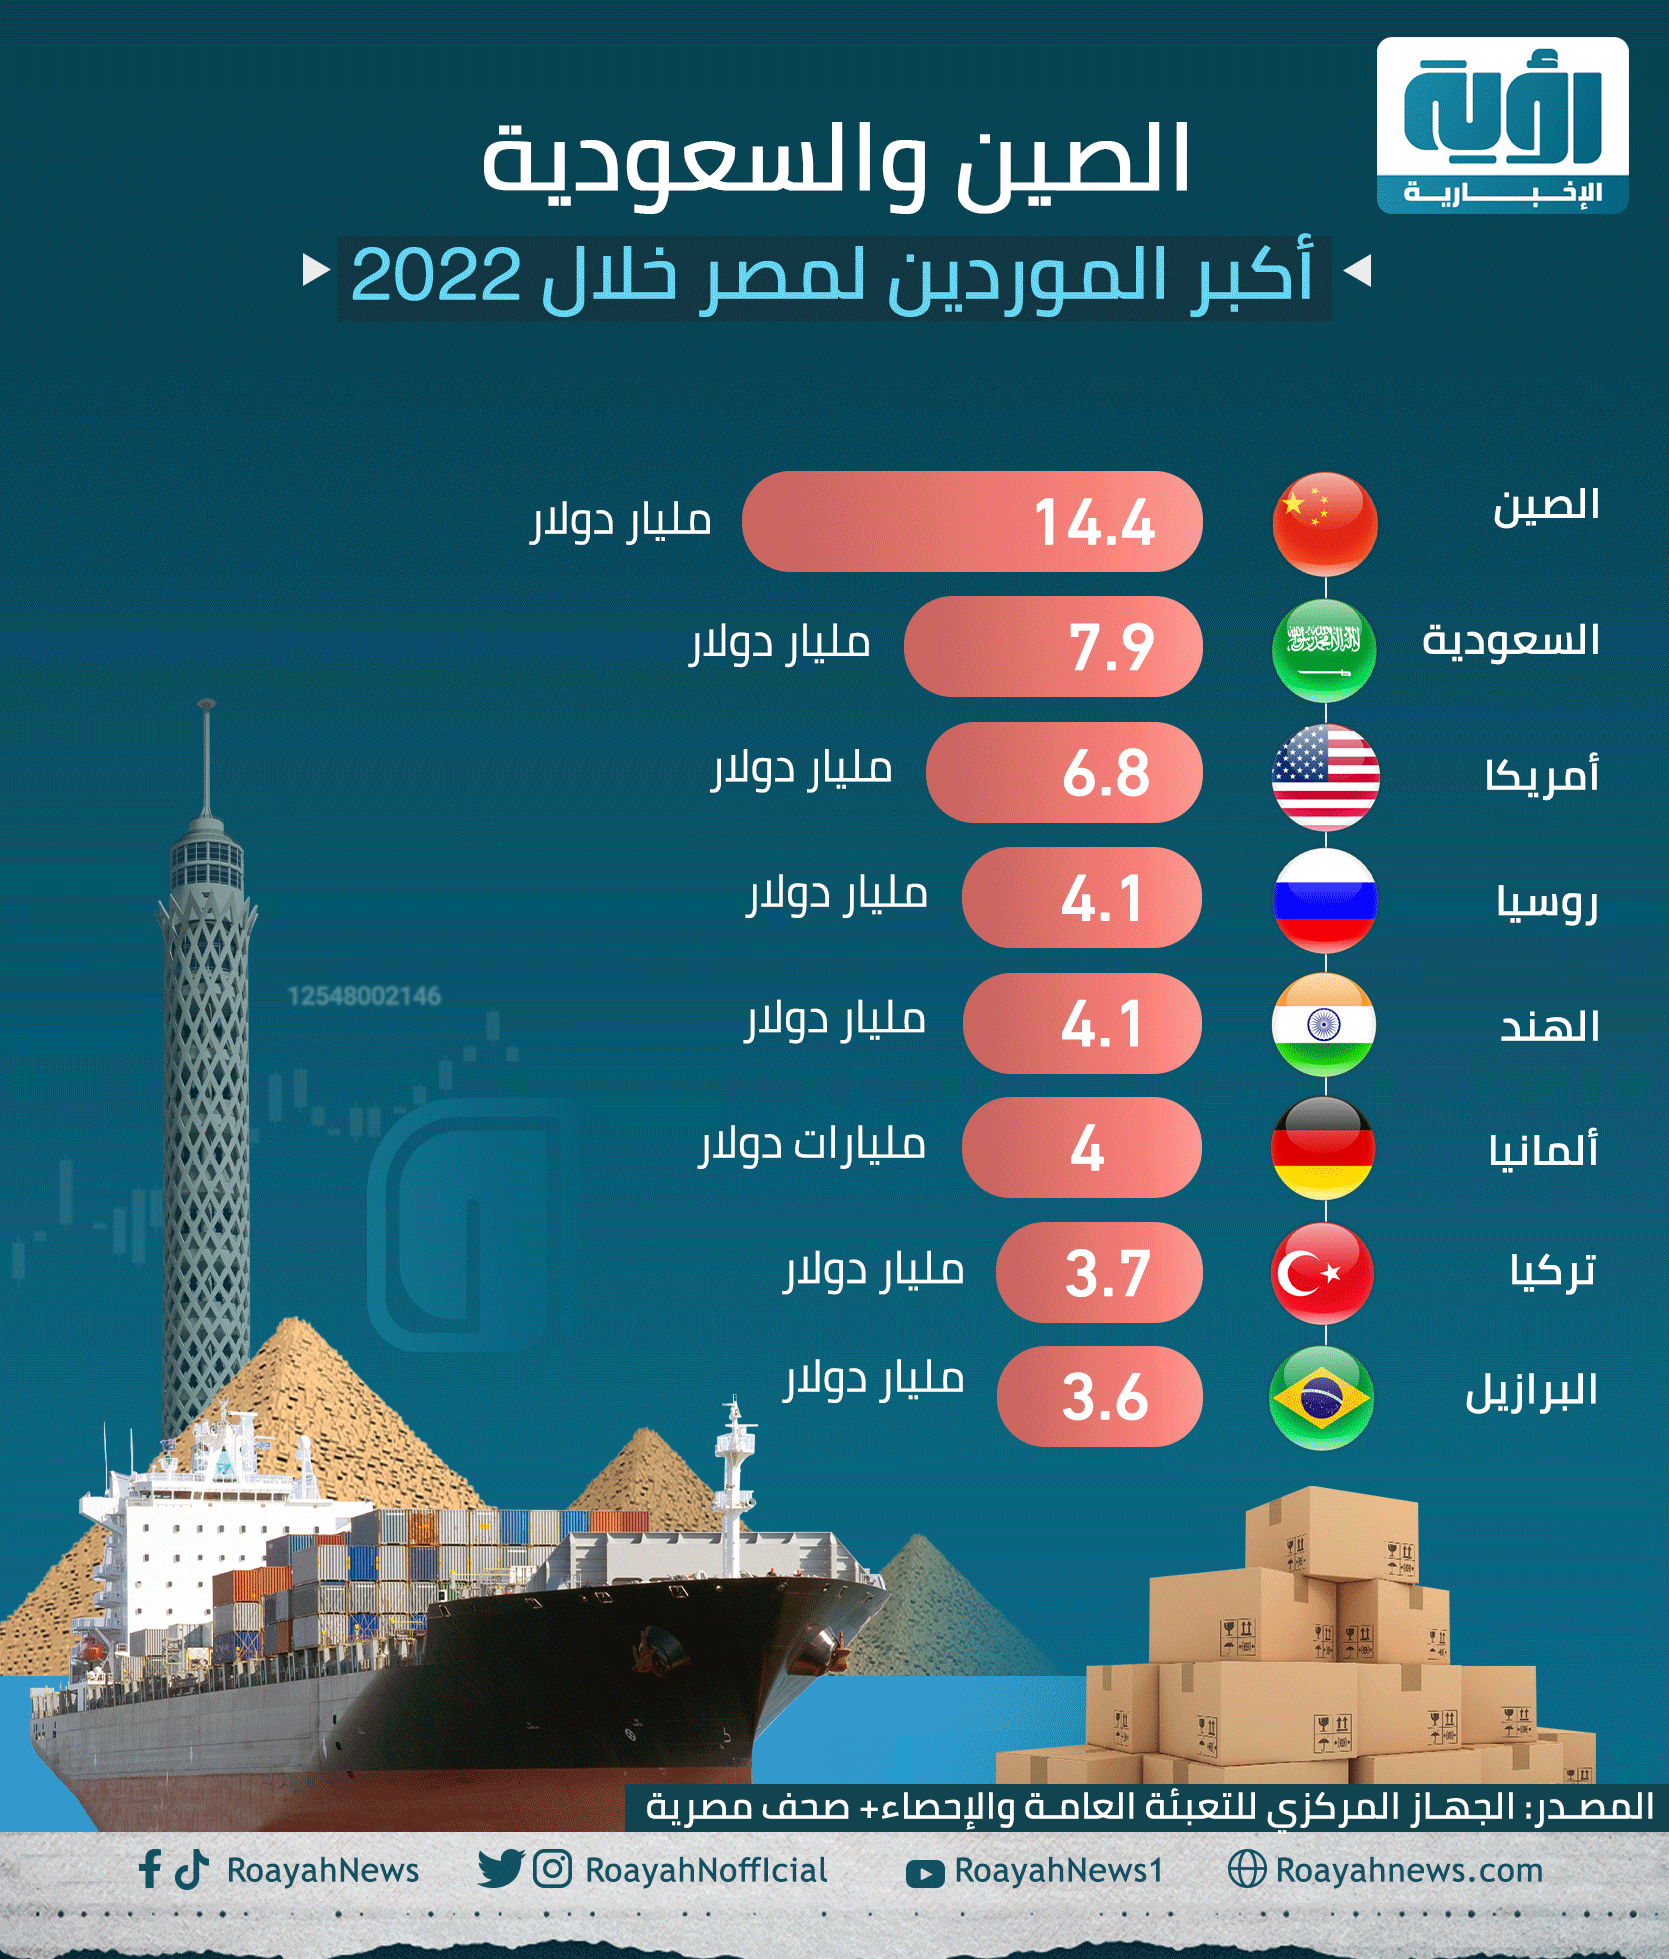 الصين والسعودية أكبر الموردين لمصر خلال 2022